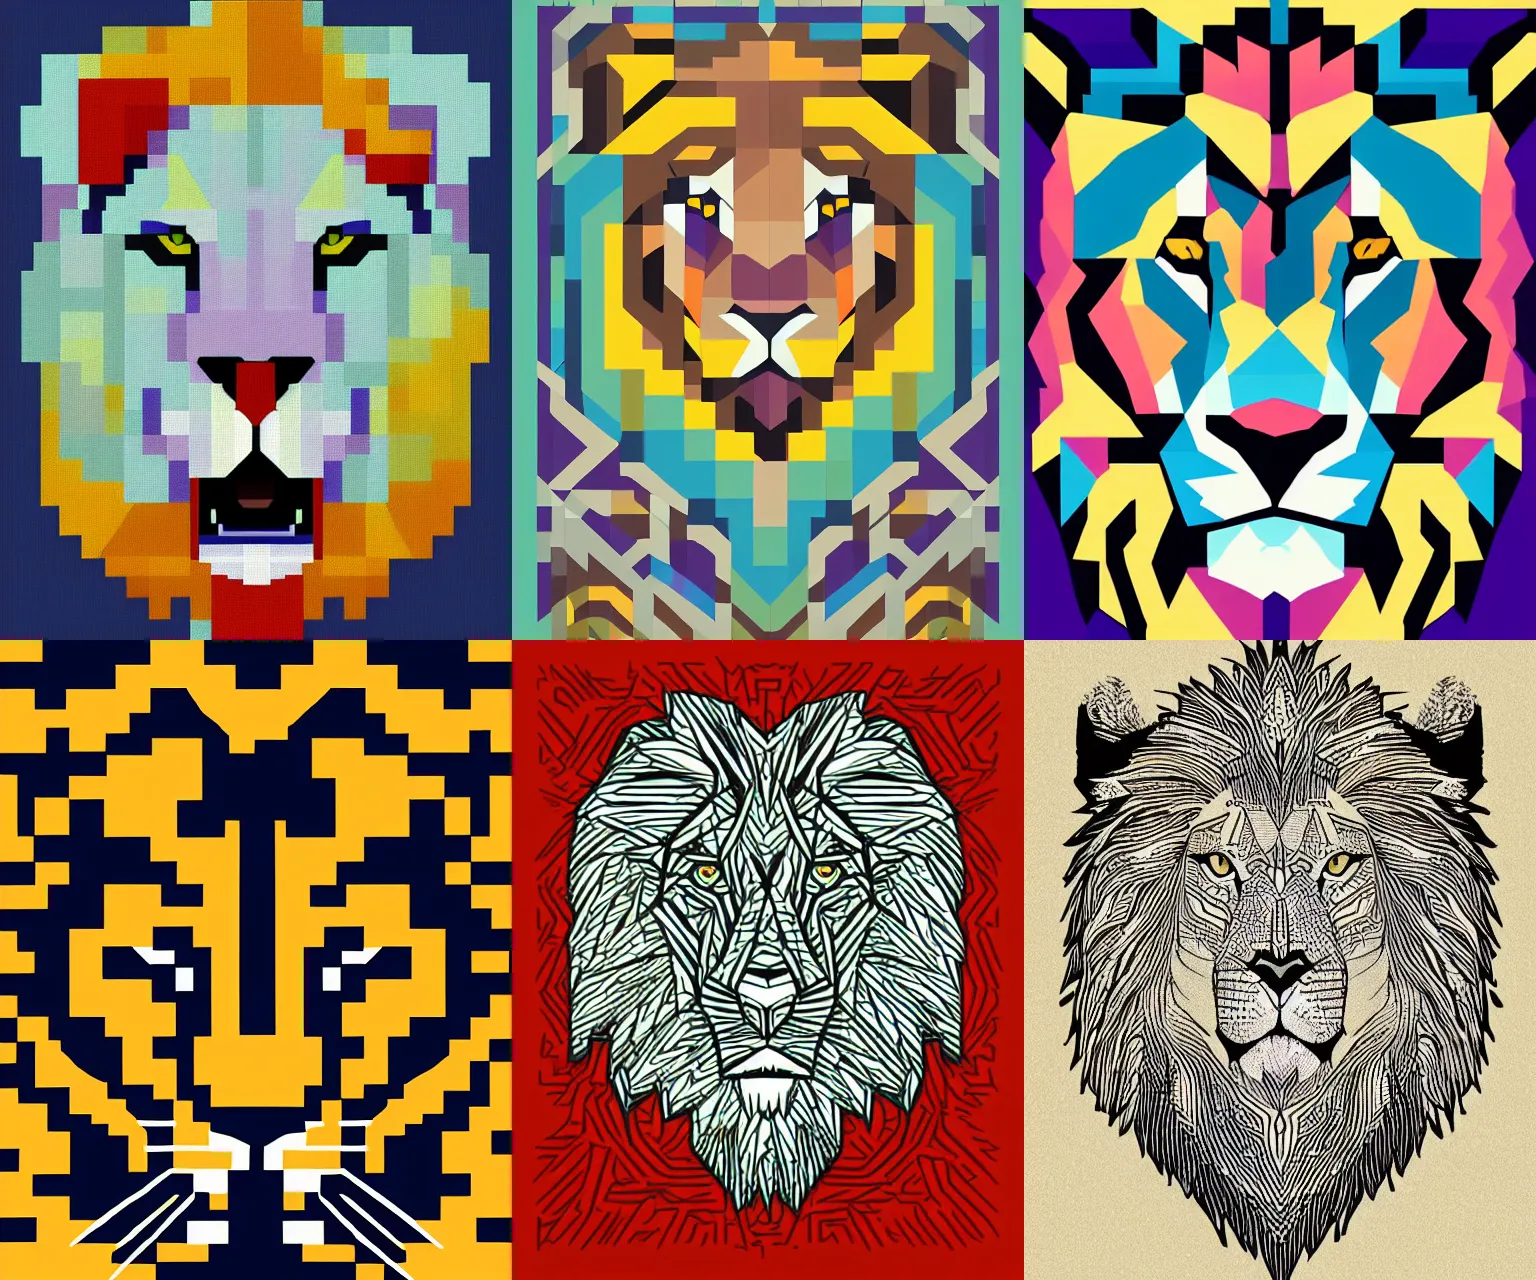 Prompt: Lion-roar stylized geometric art pixelating